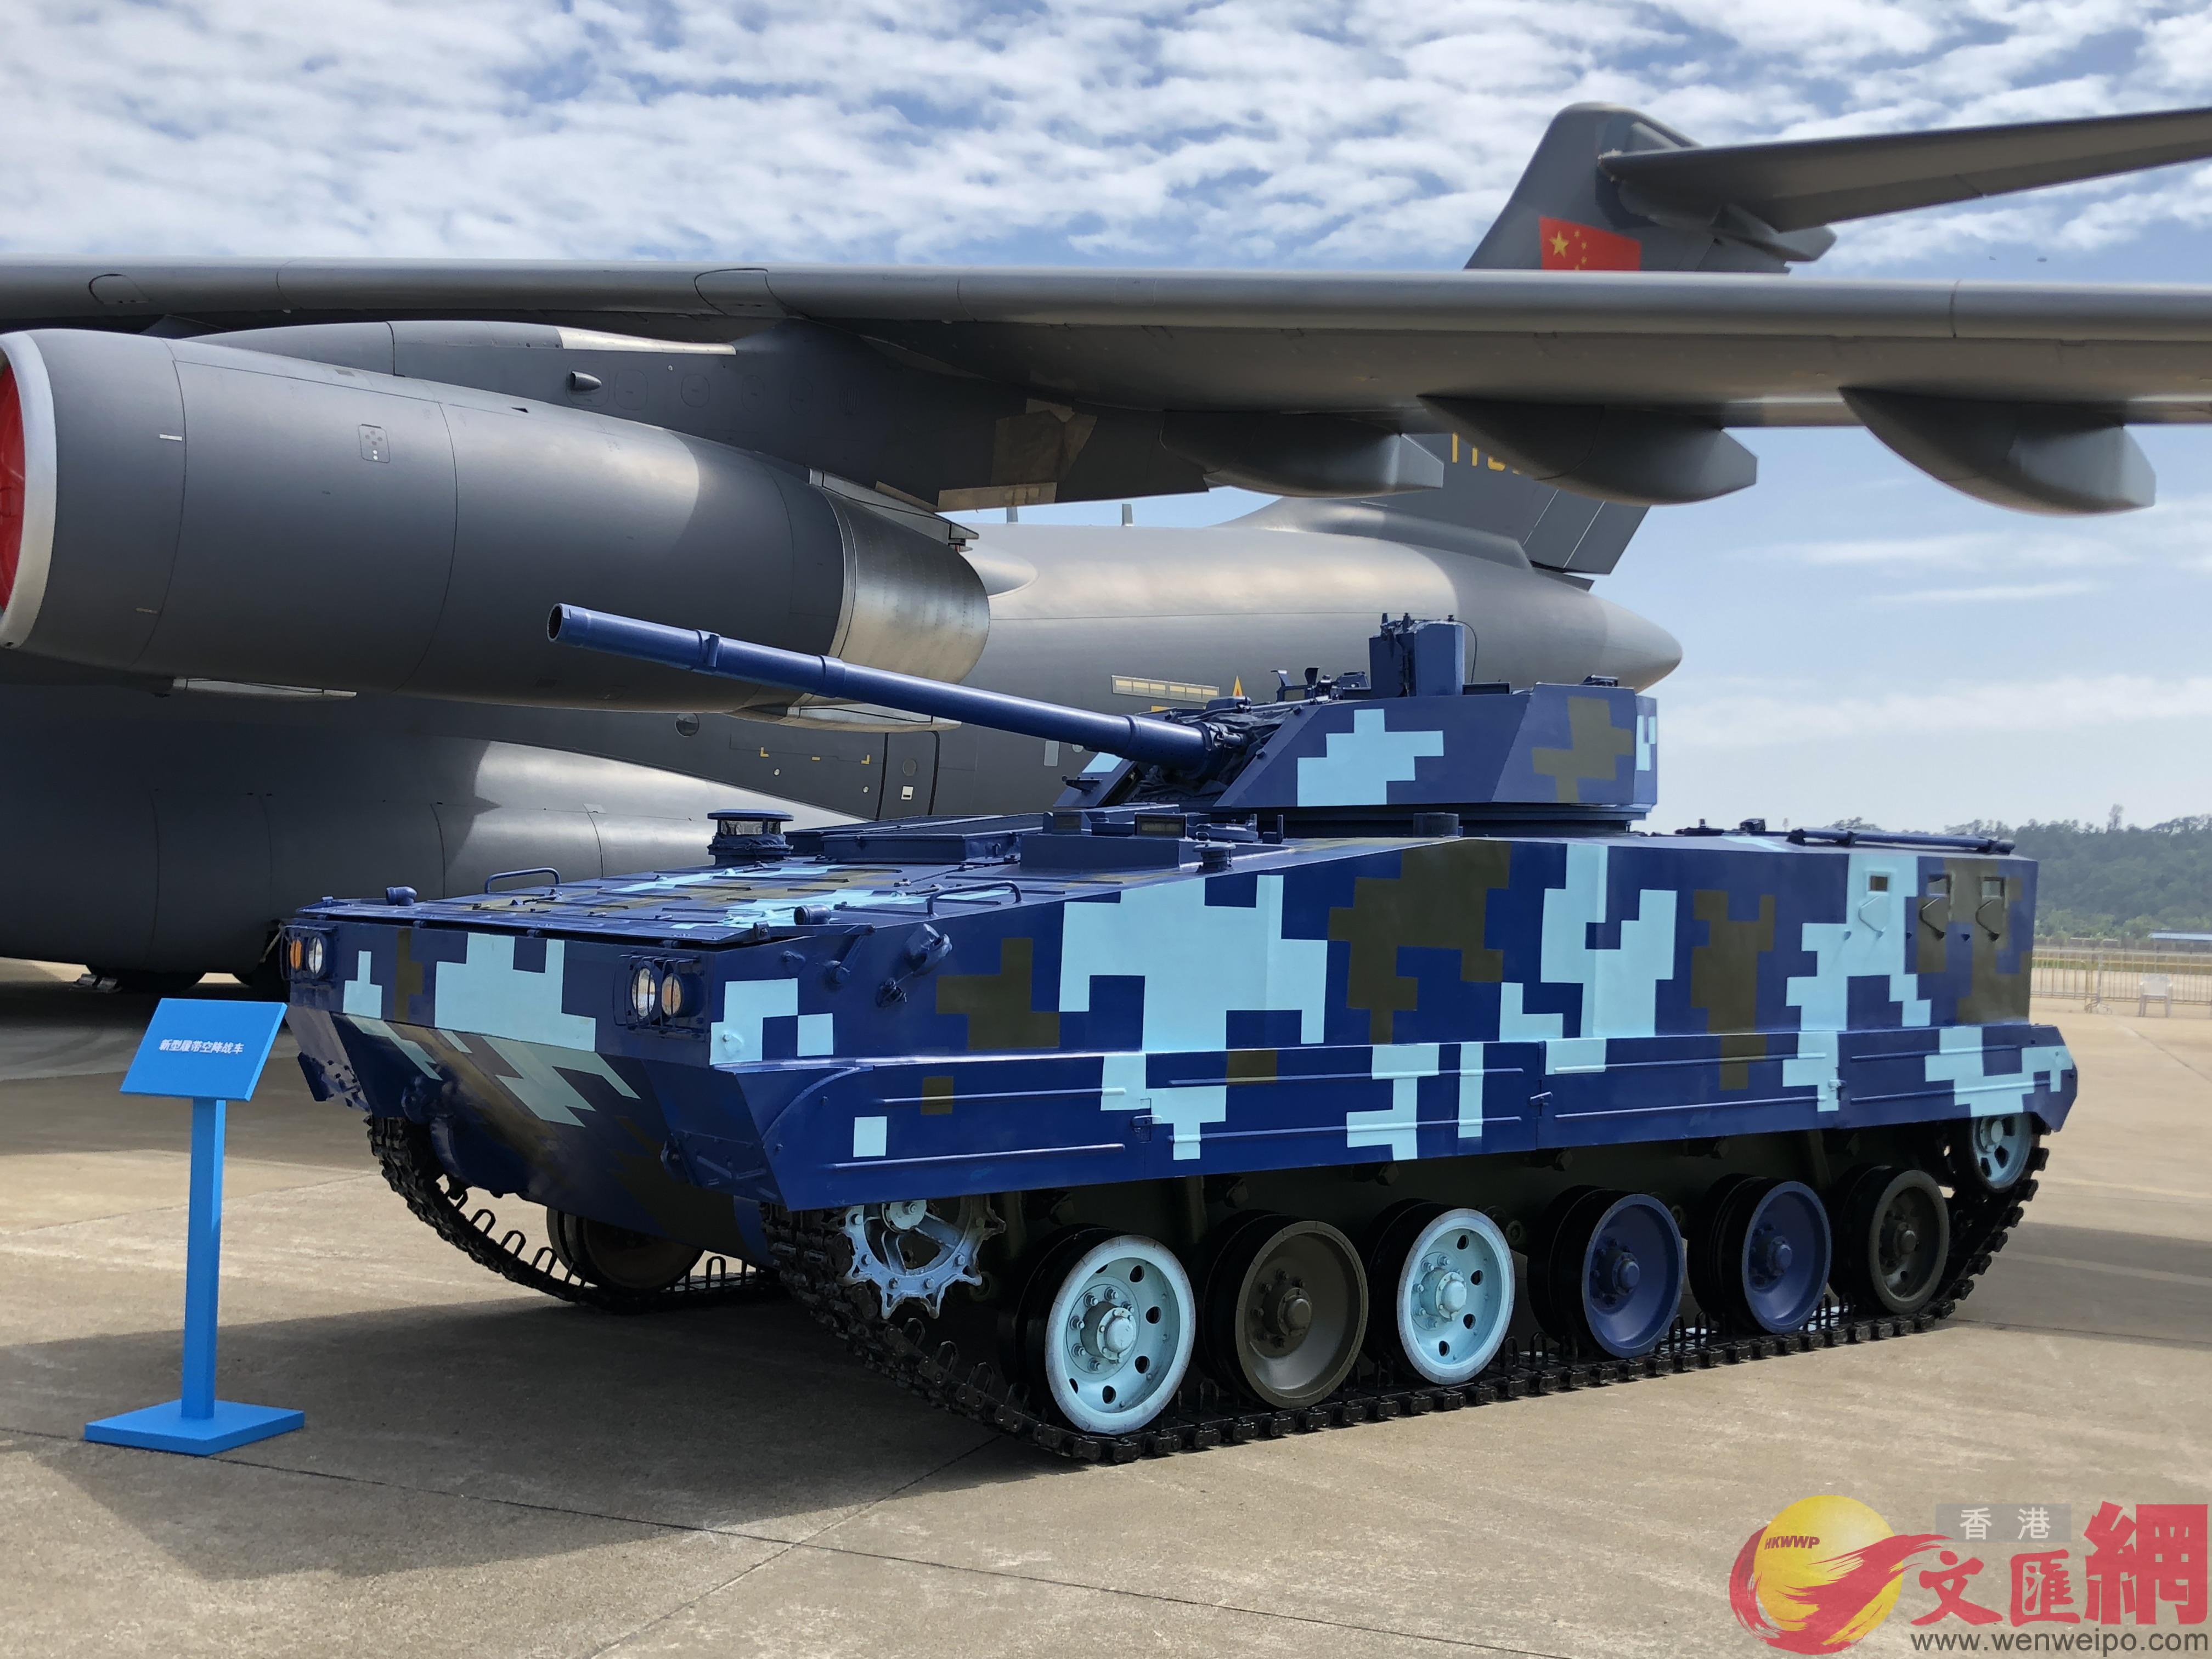 u新型履帶空降戰車v與中國空軍其他現役裝備一併亮相珠海航展C]方俊明攝^